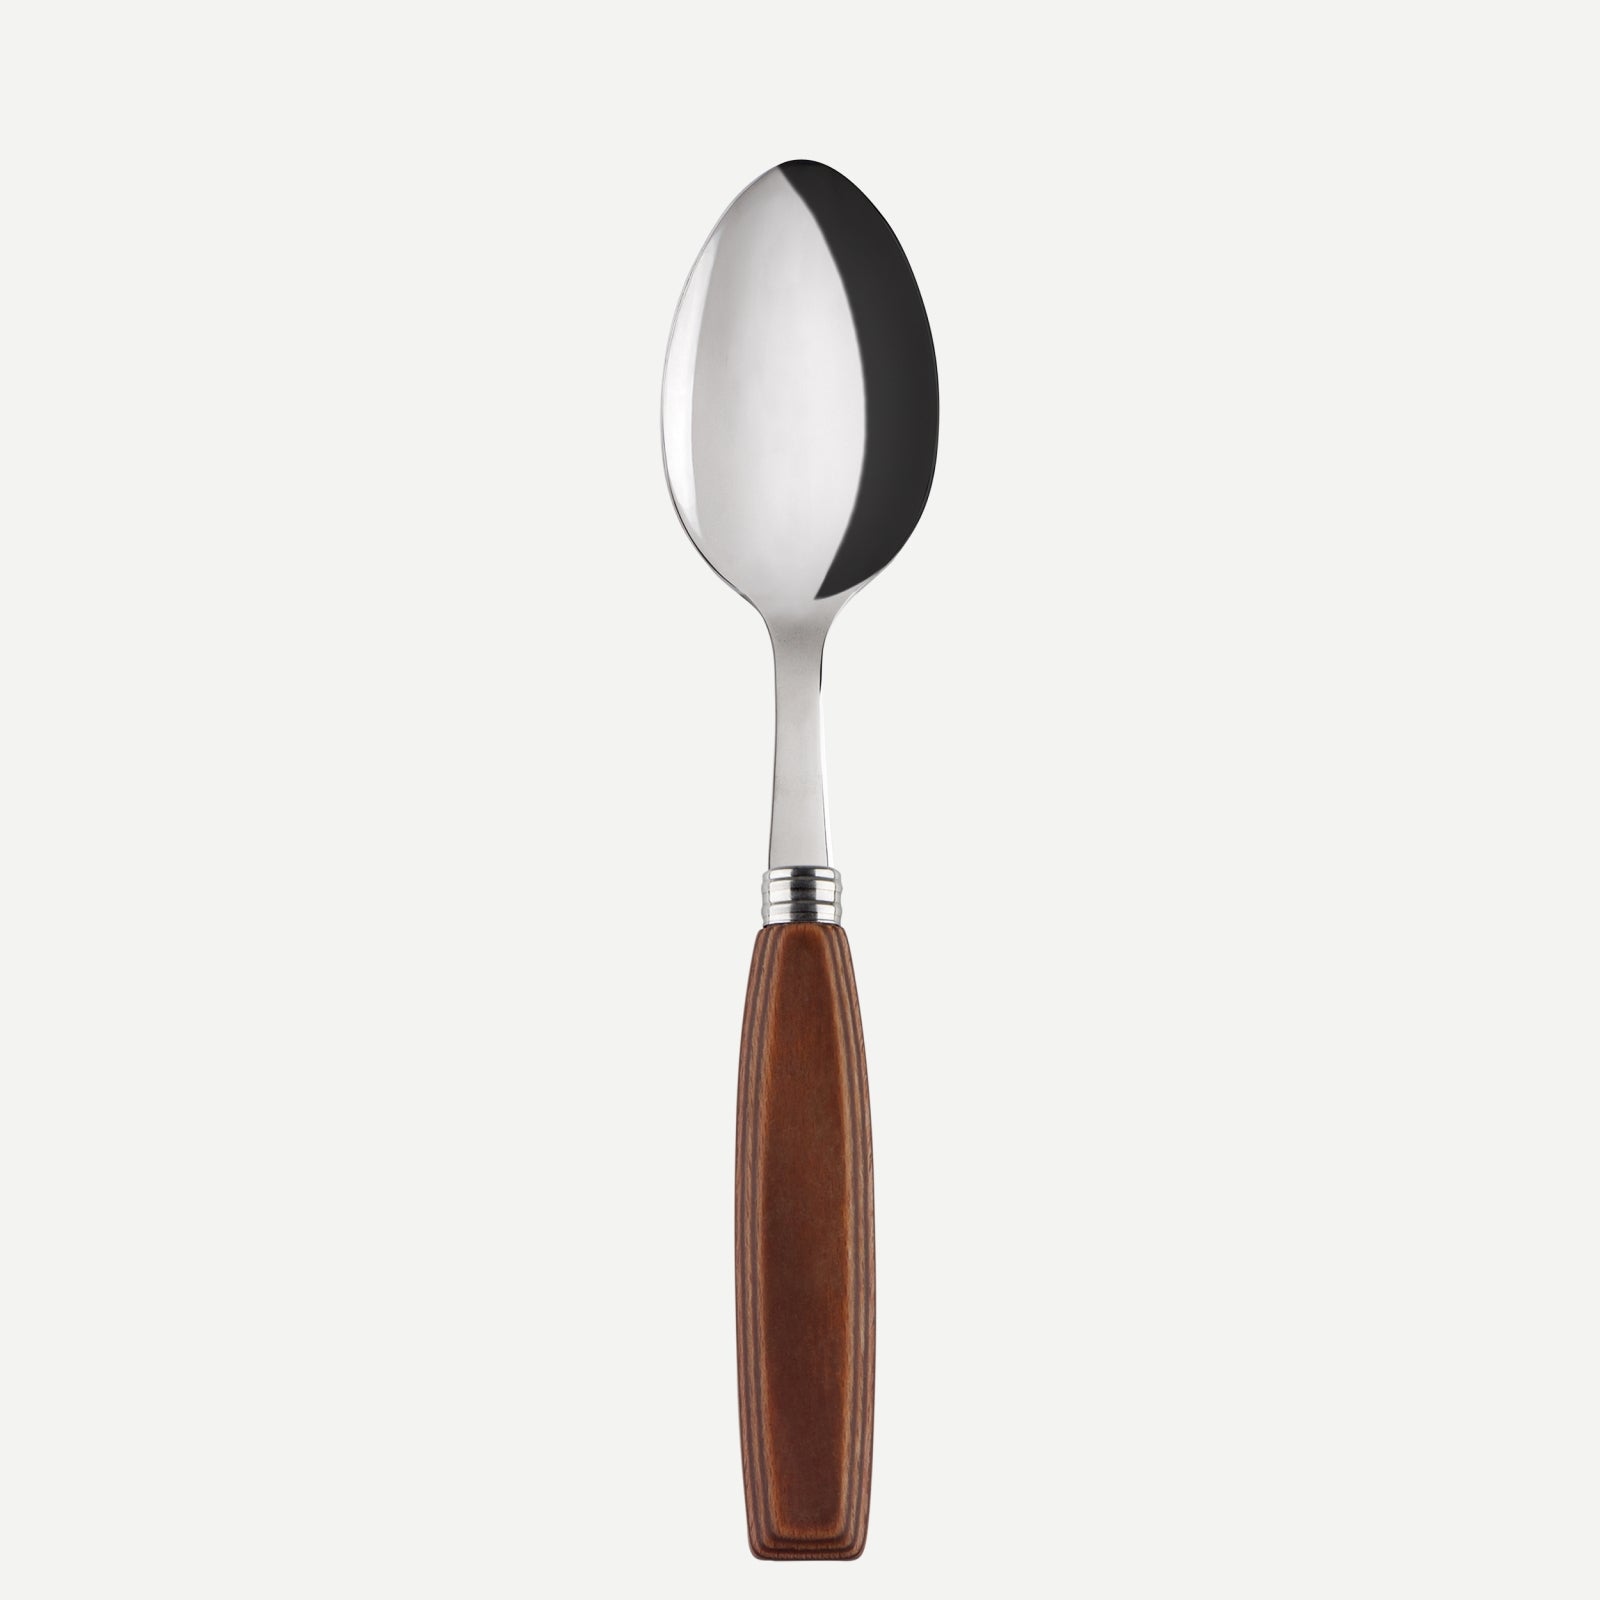 Soup spoon - Djembe - Light press wood